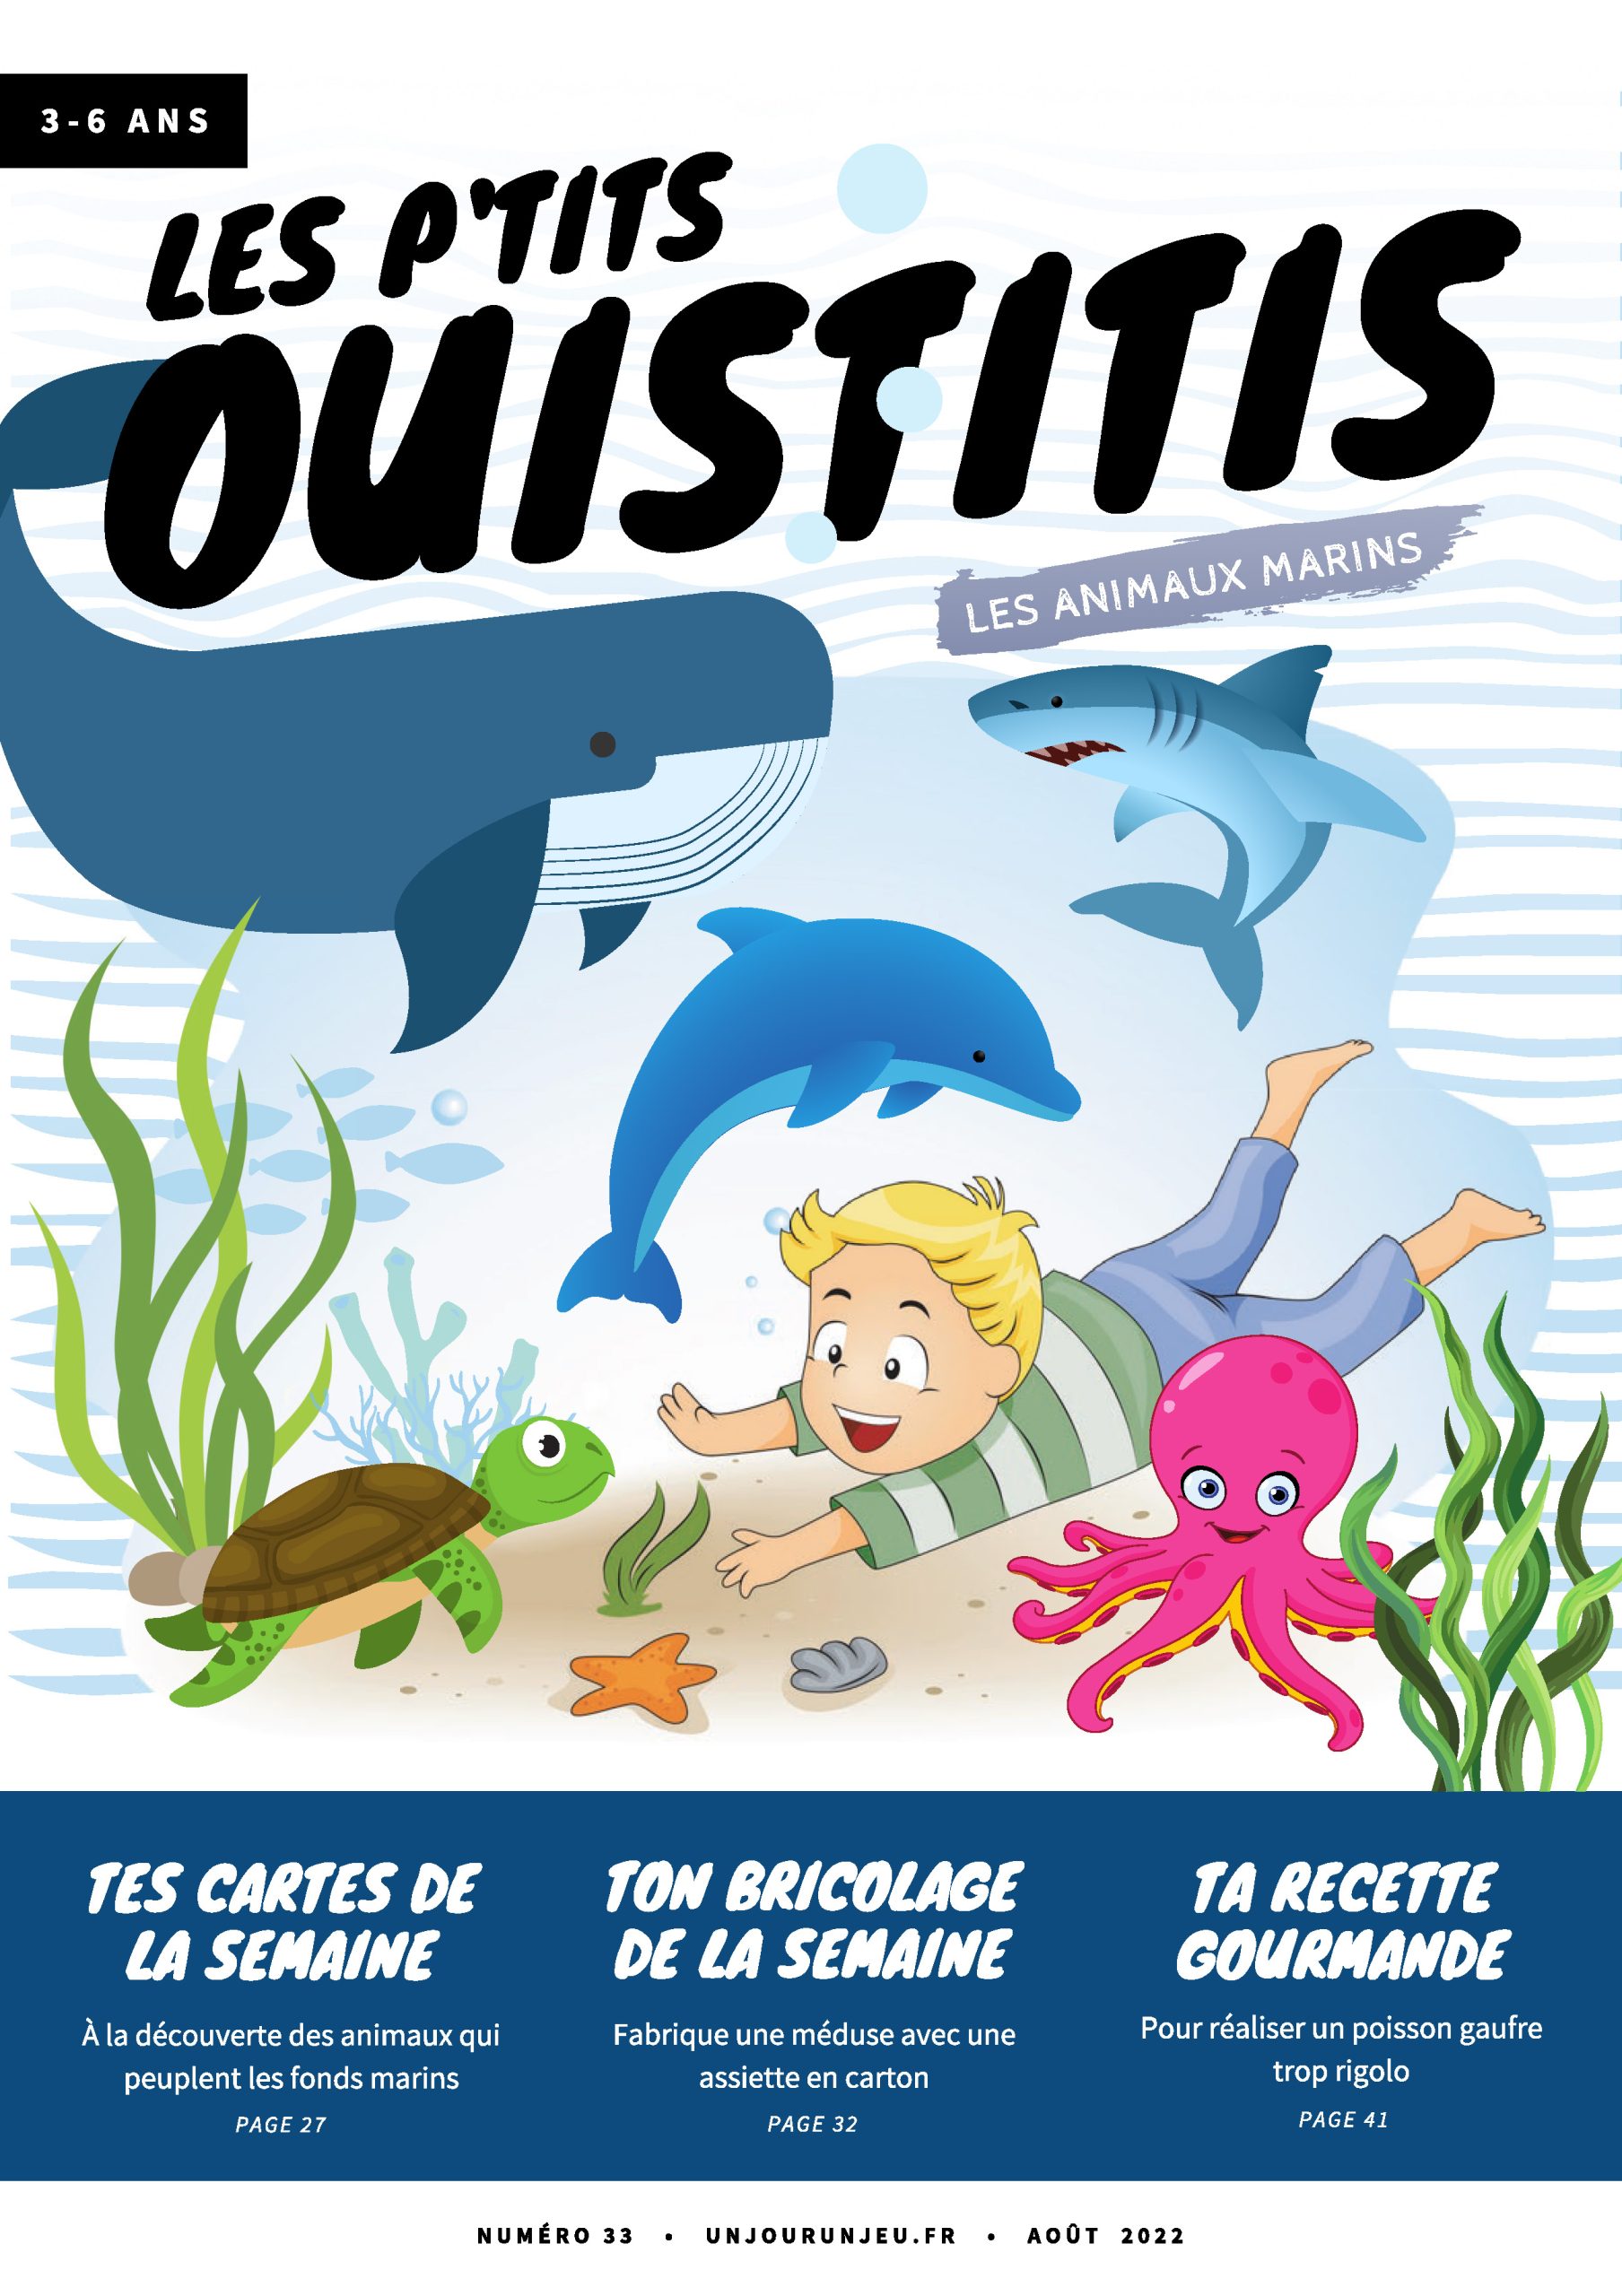 Les P'tits Ouistitis et les animaux marins